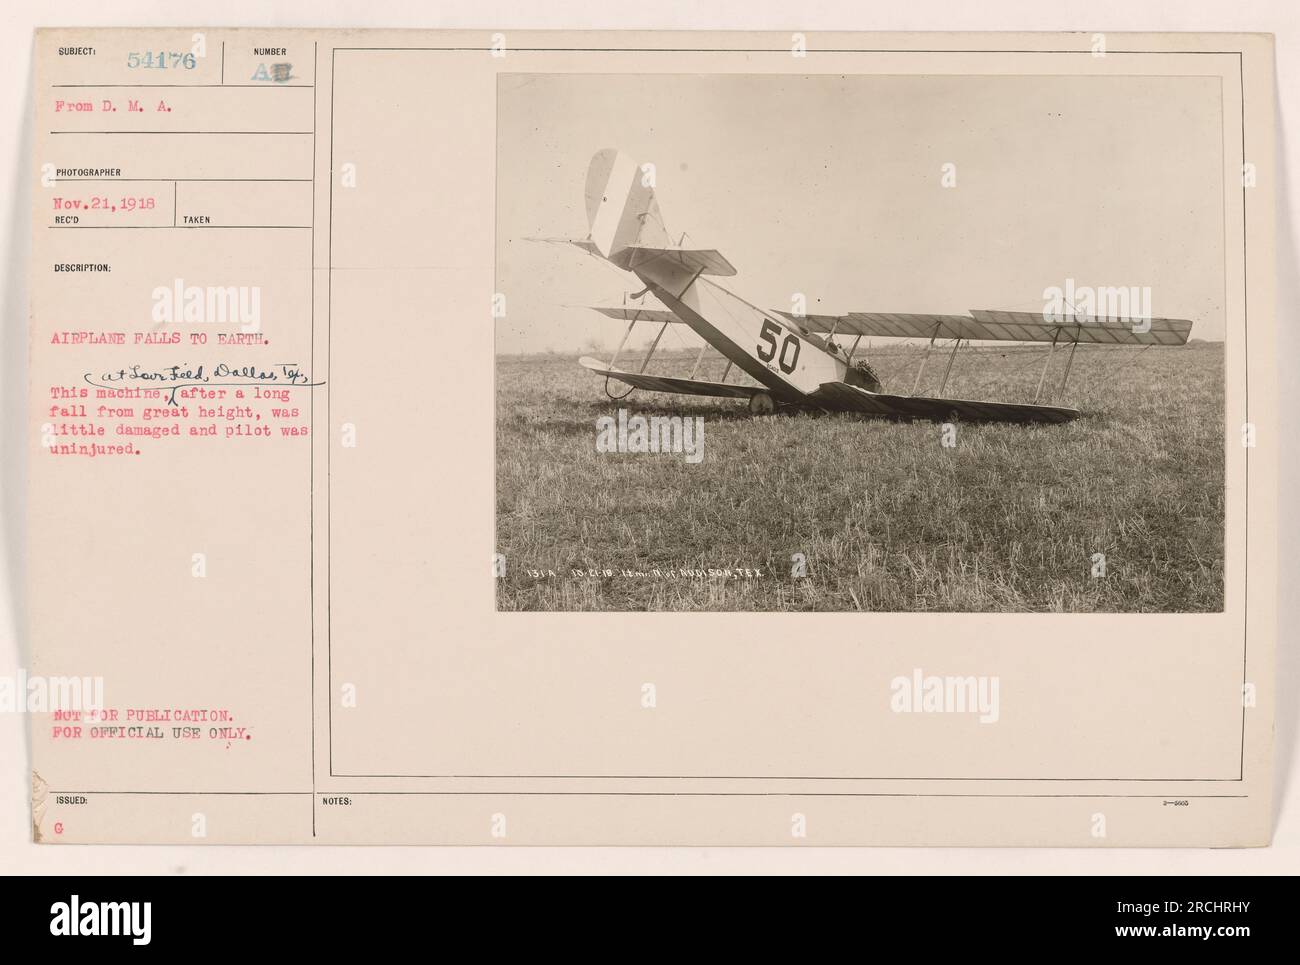 Das Flugzeug fällt in Love Field, Dallas, Texas, auf die Erde. Die Maschine erlitt minimale Schäden und der Pilot wurde nach einem langen Sturz aus großer Höhe nicht verletzt. Foto aufgenommen am 21. November 1918 von DMA-Fotograf 54176. Stockfoto